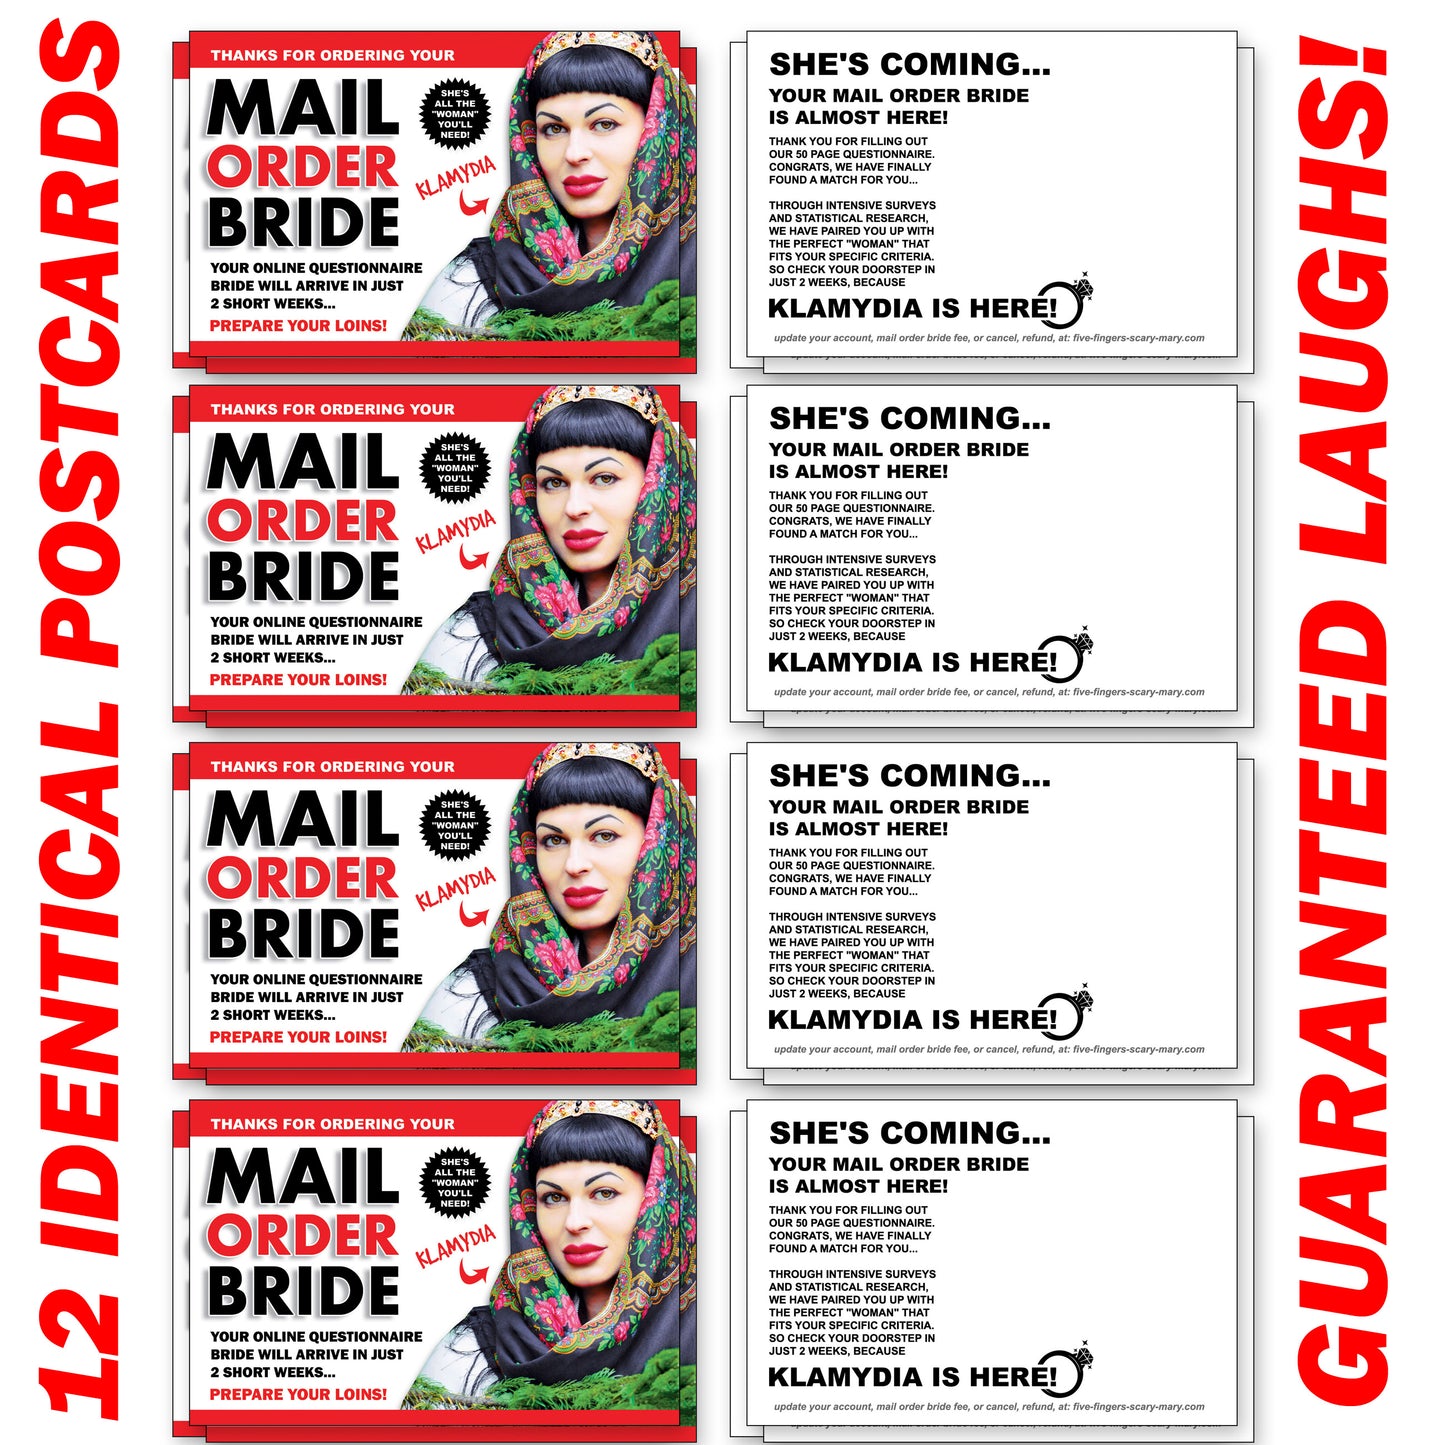 Mail Order Bride 12 Pack Prank Postcards